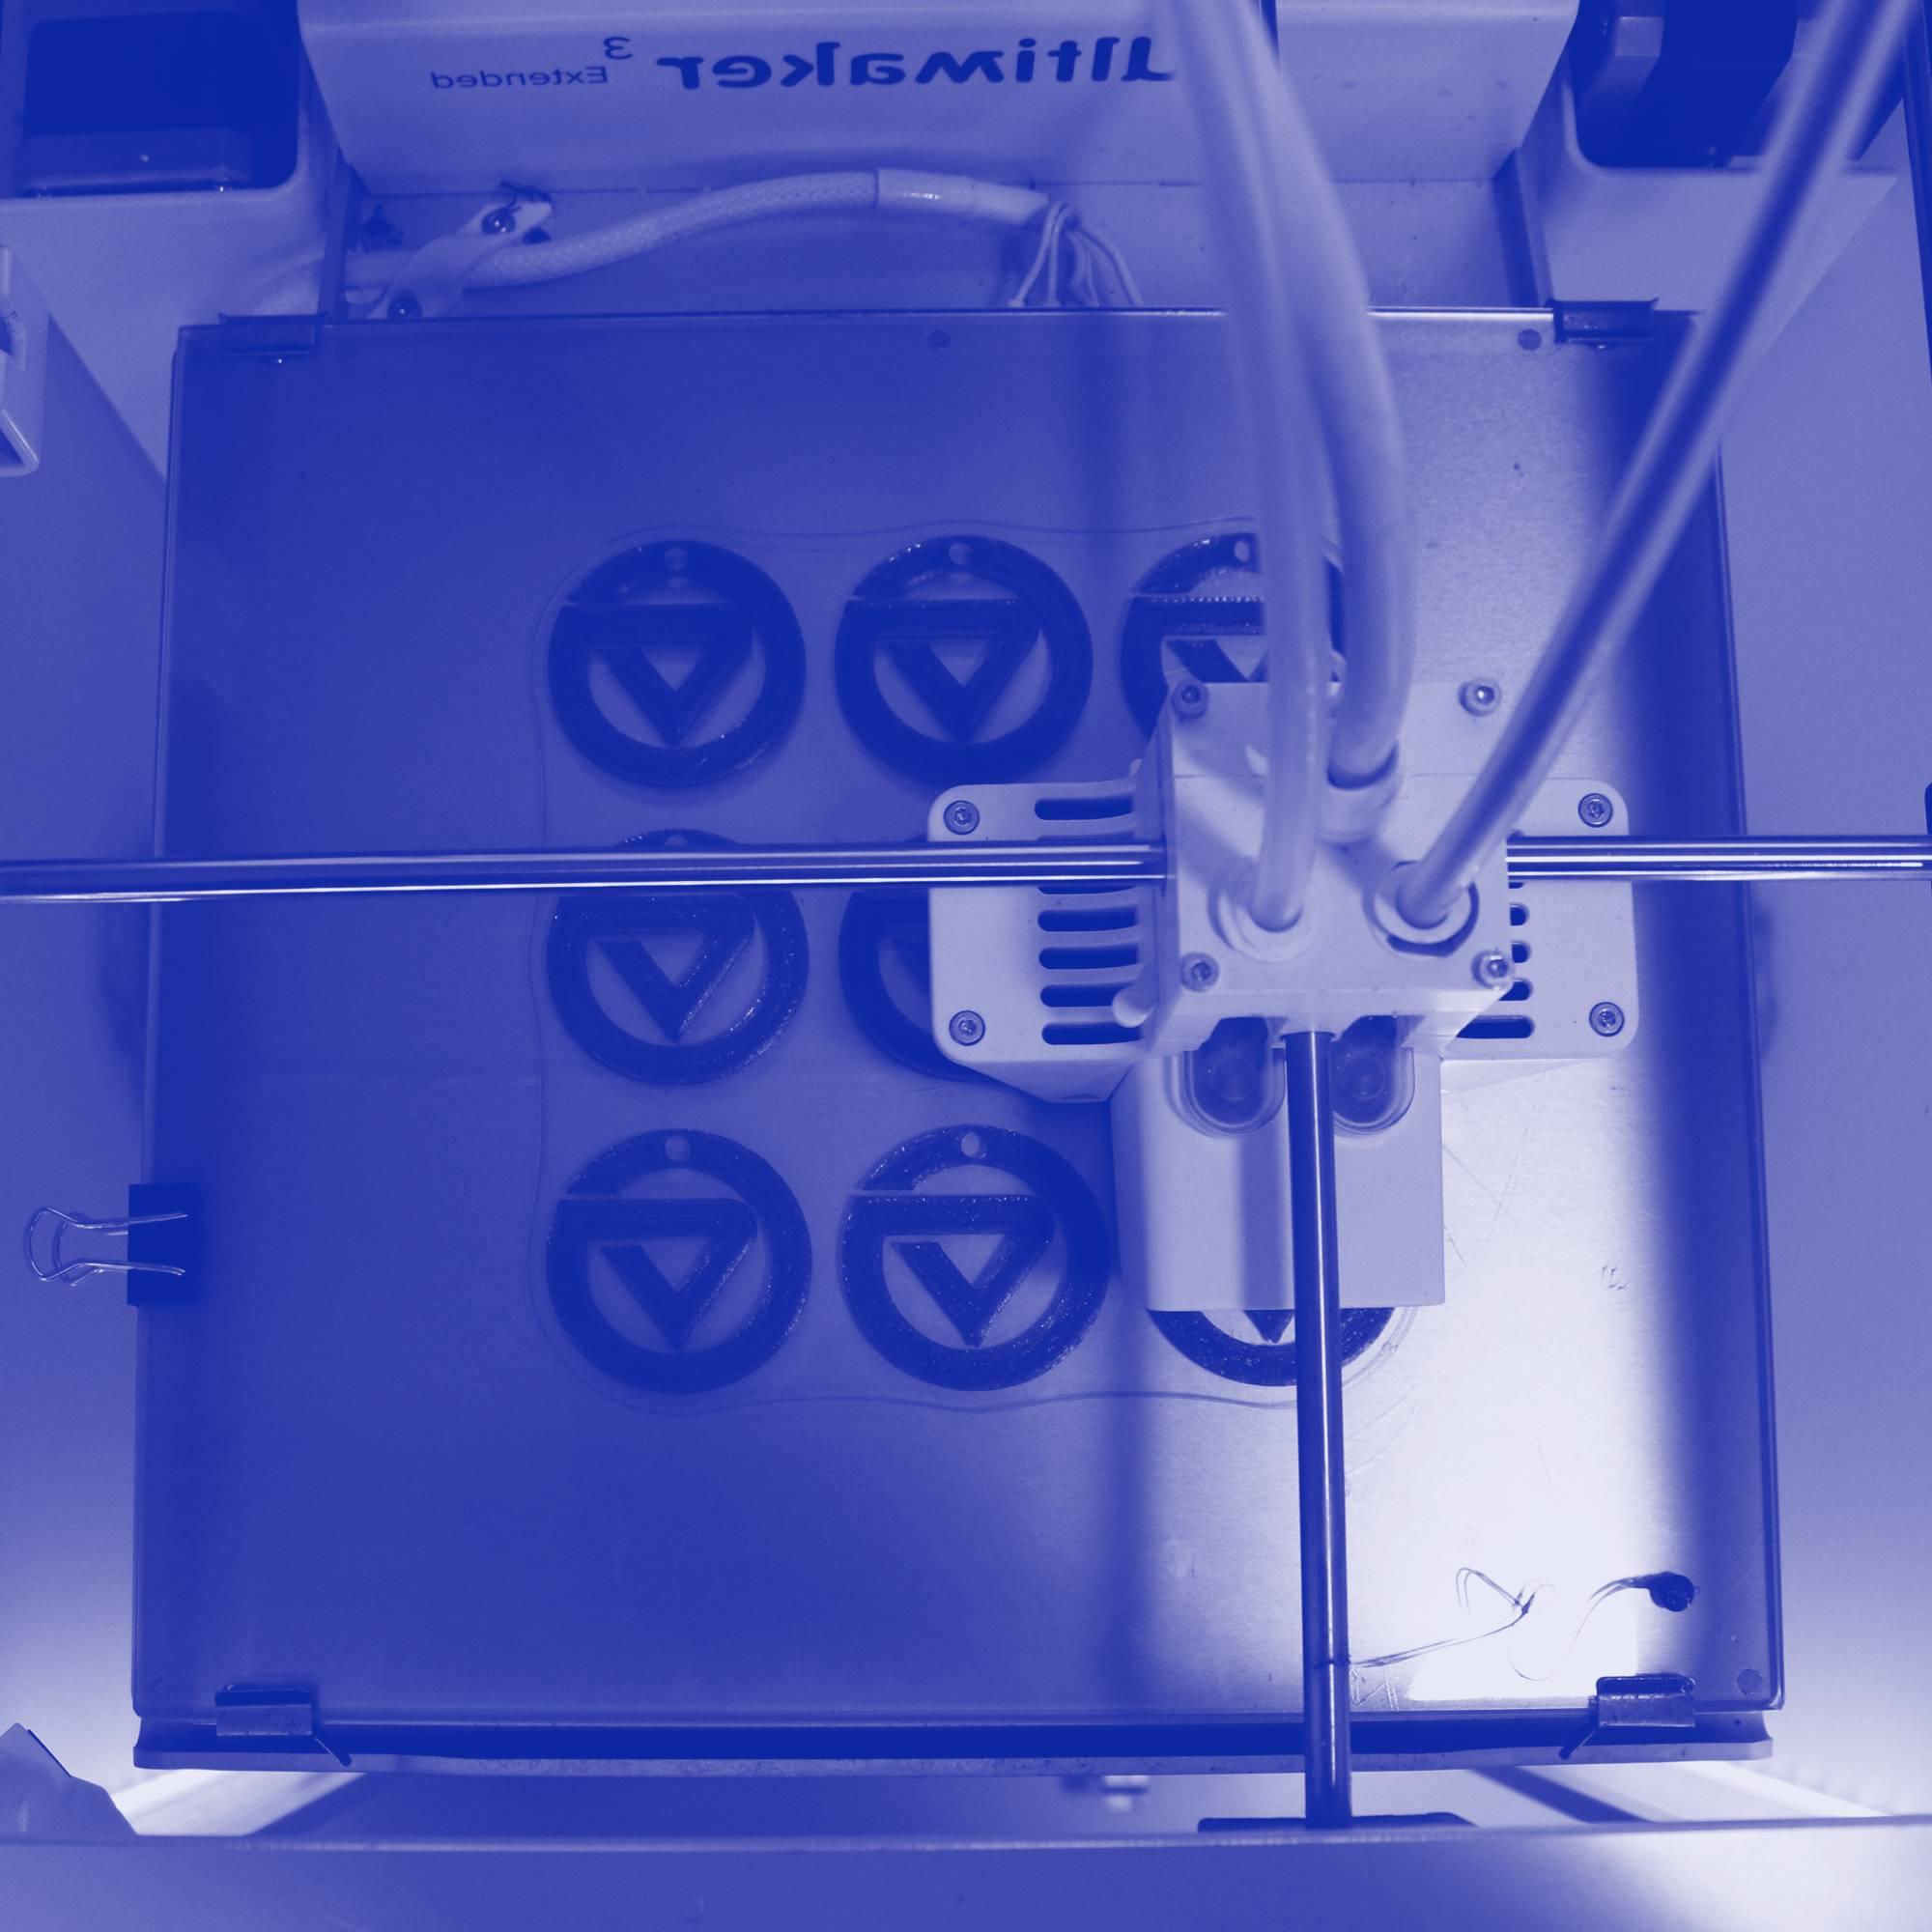 A 3D printer printing GVSU logos